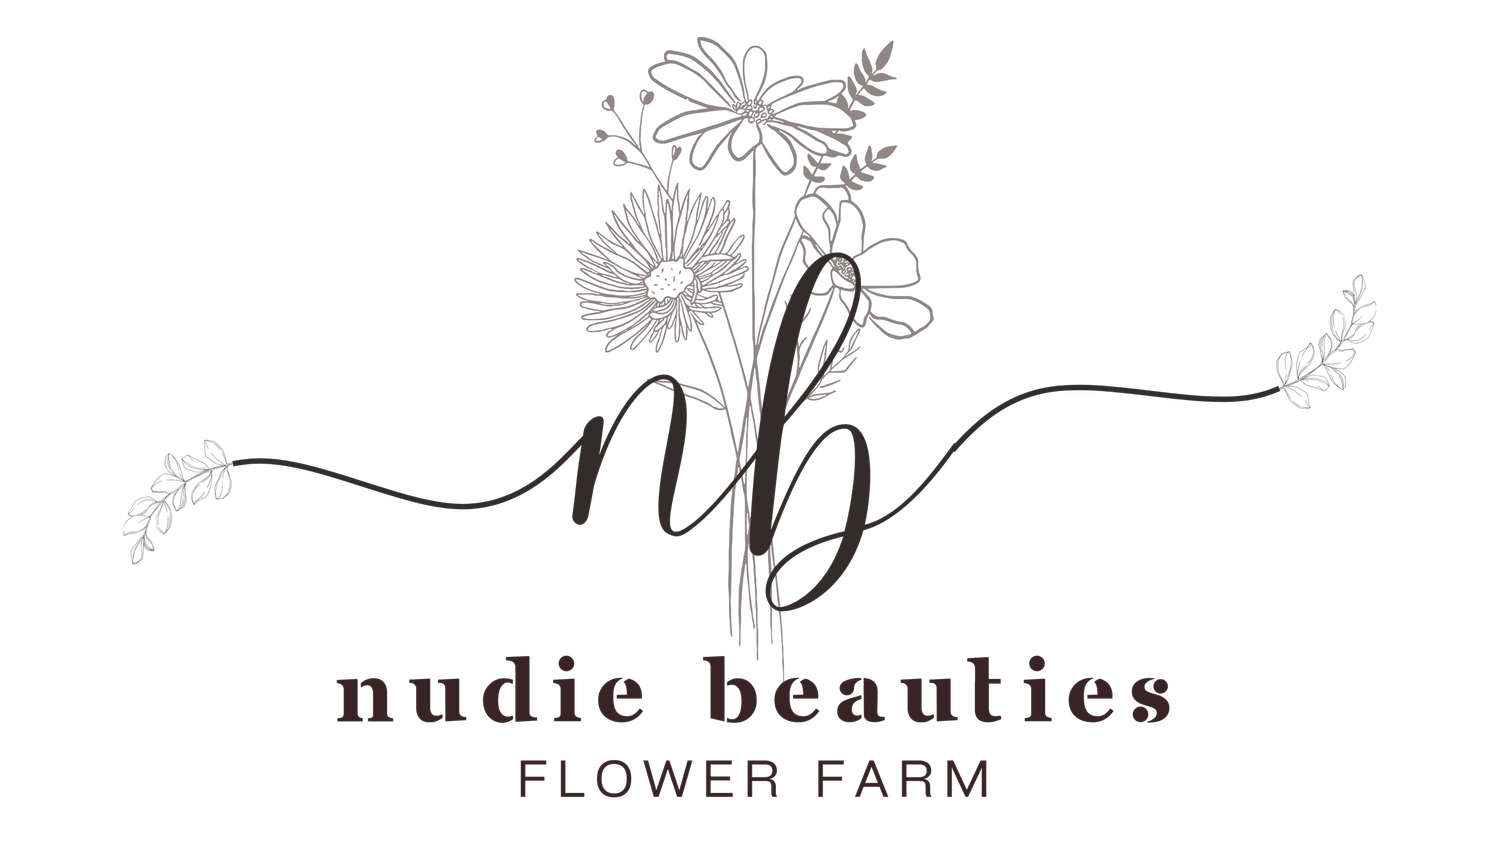 Nudie Beauties Flower Farm